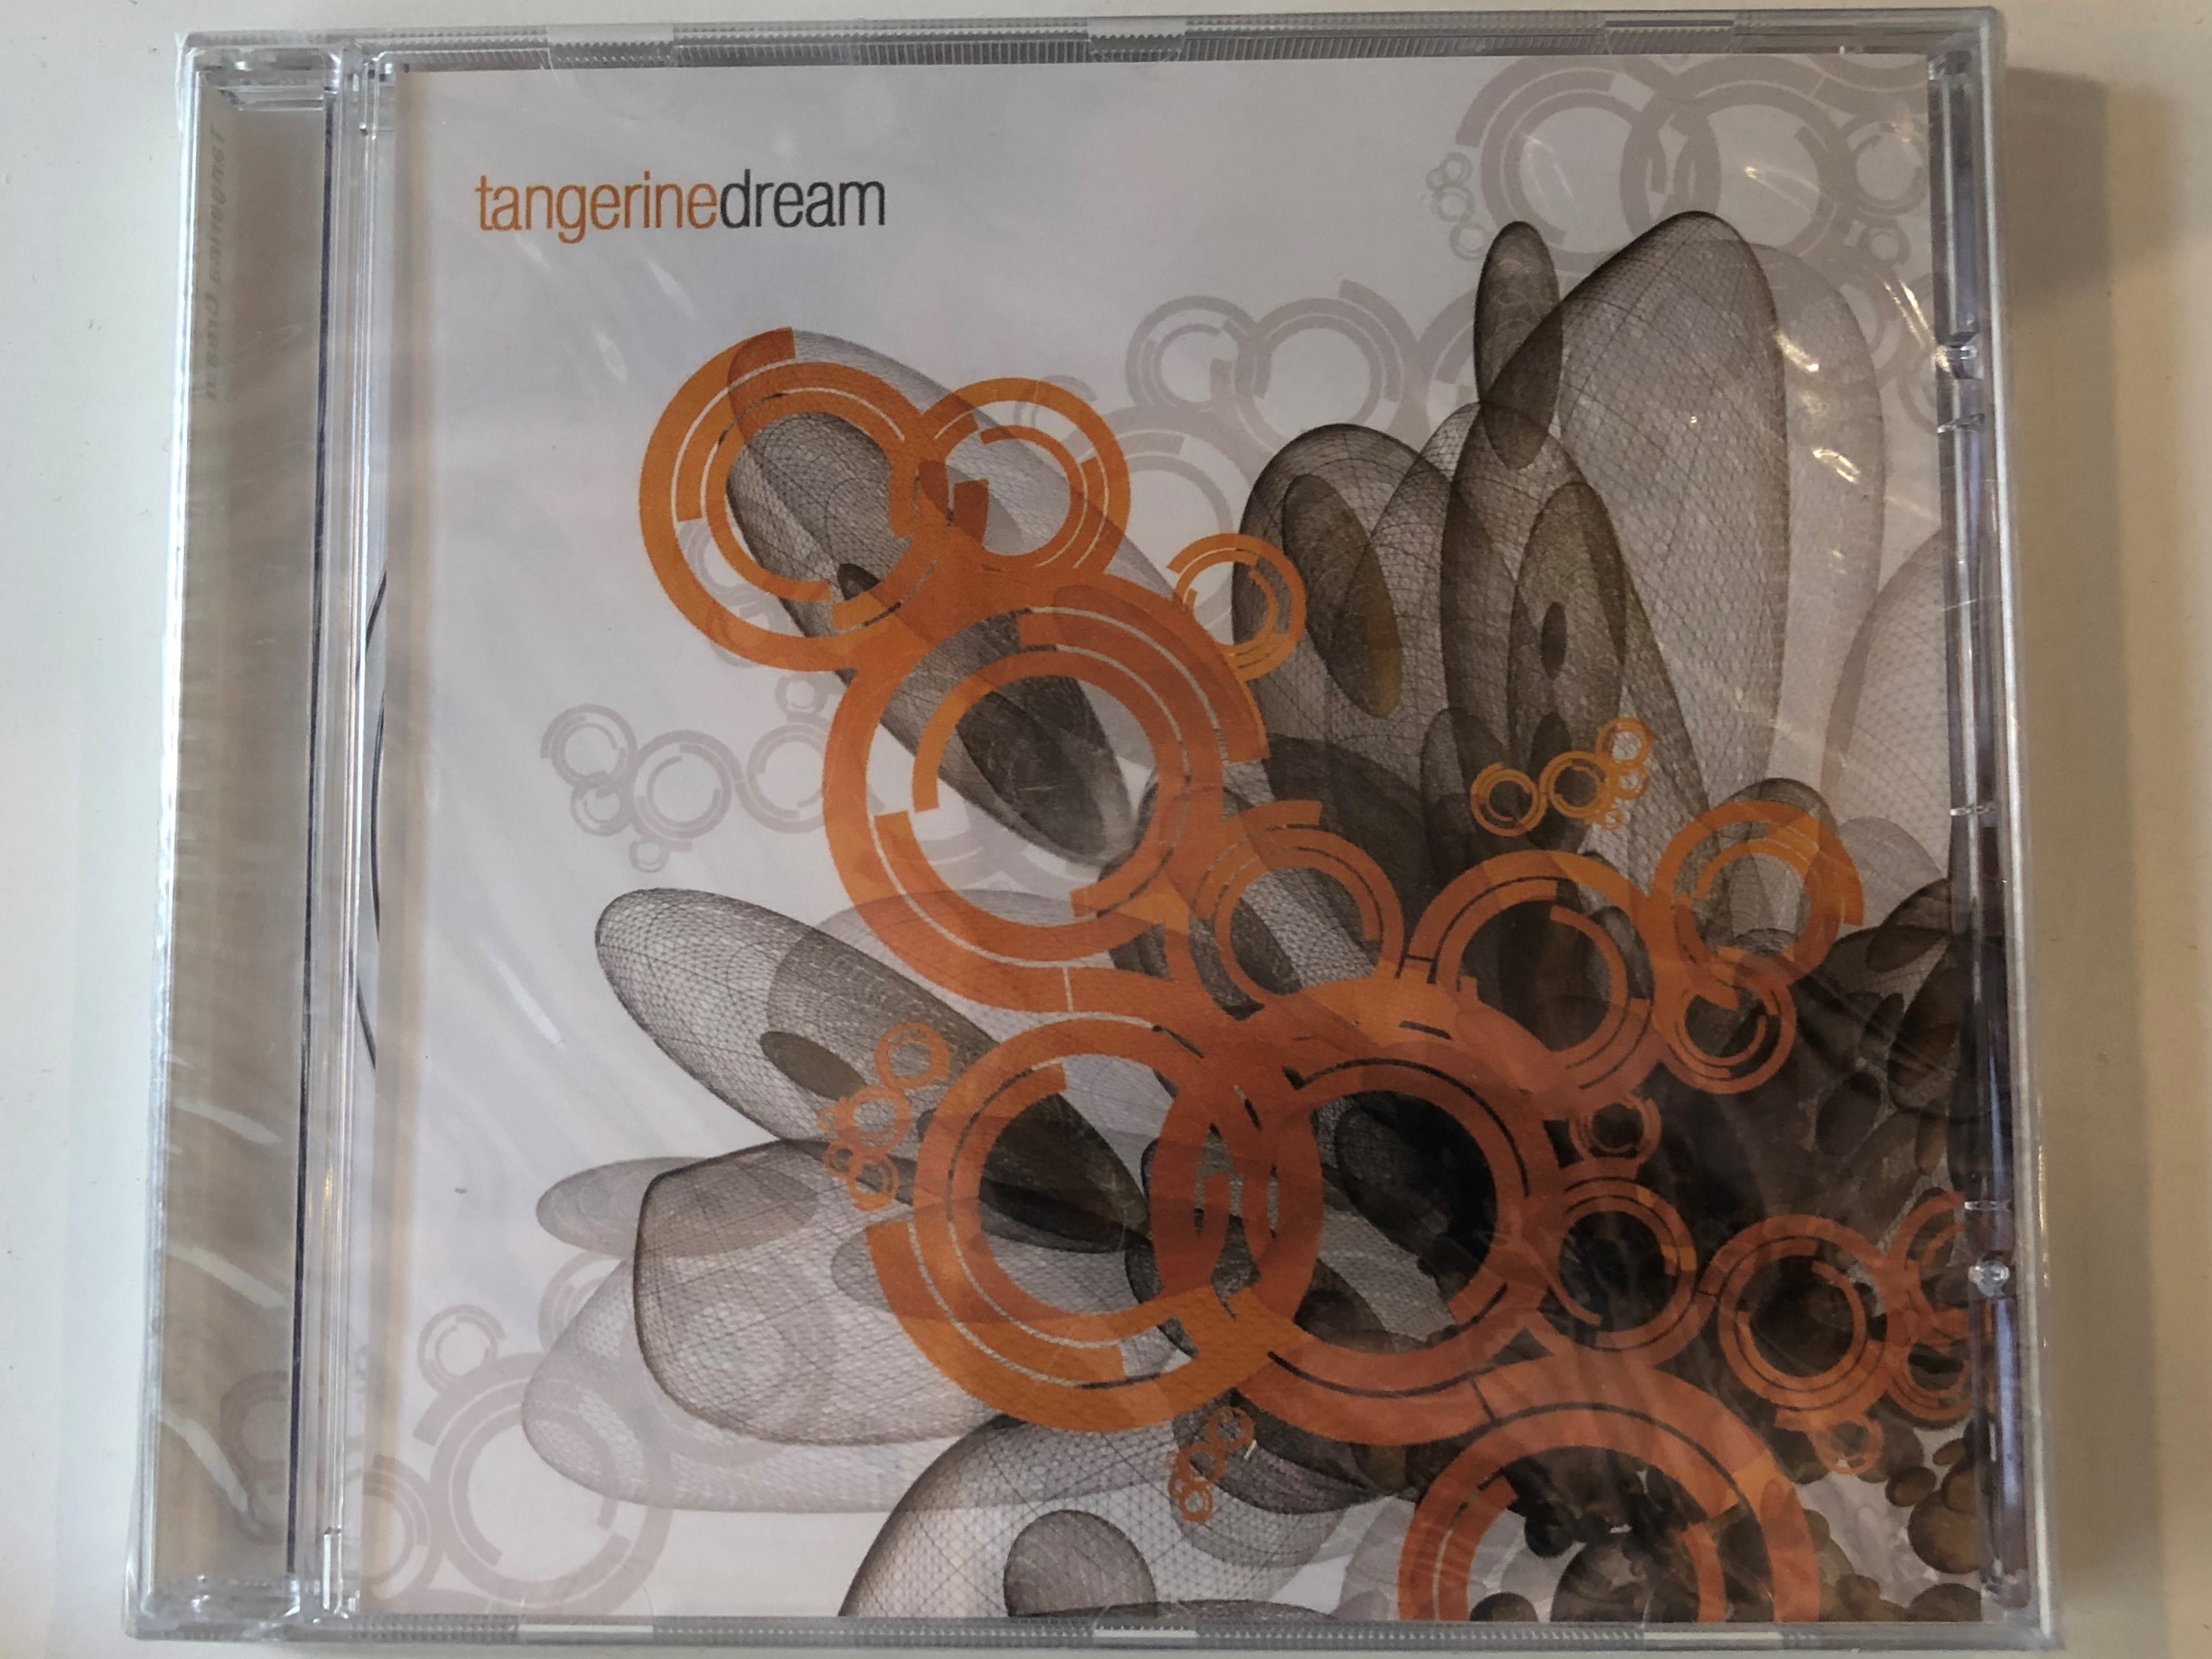 tangerine-dream-eurotrend-audio-cd-cd-142-1-.jpg